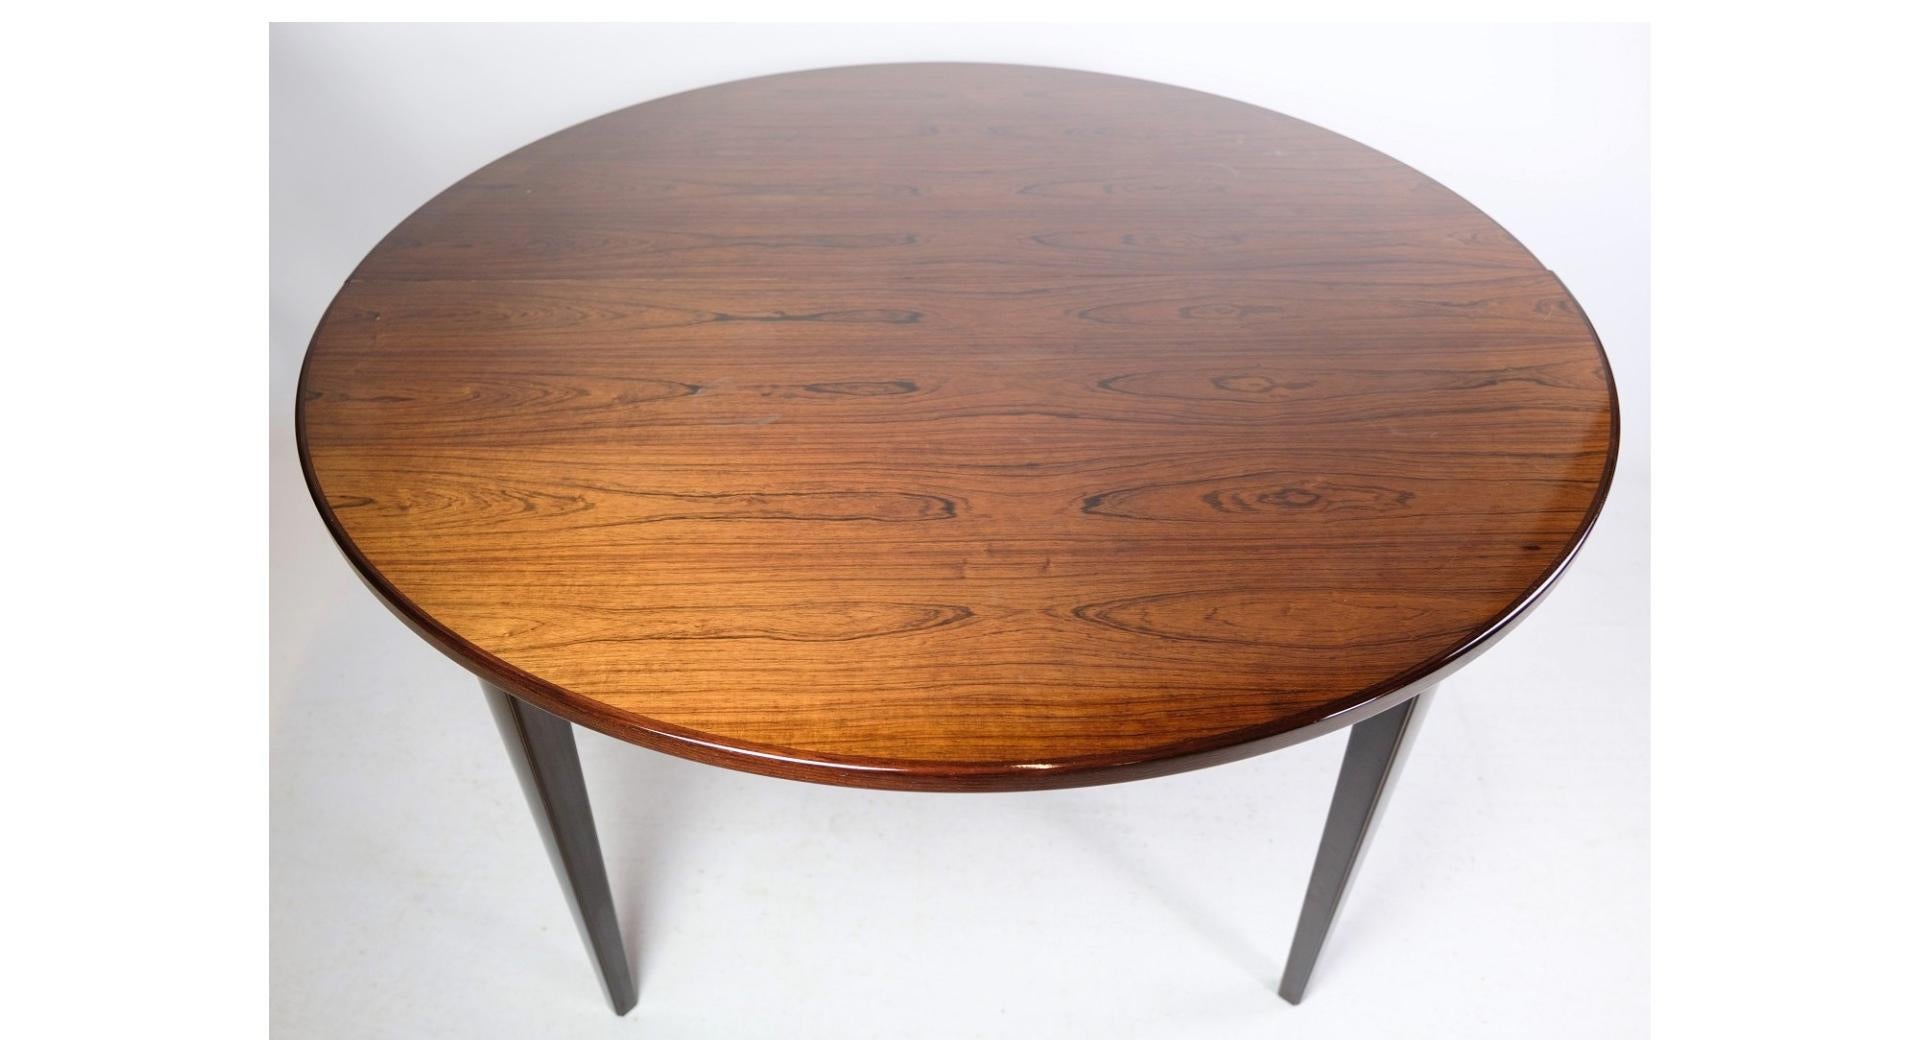 La table de salle à manger en bois de rose, conçue par Design/One Jun. A/S, modèle no. 55 et datant d'environ les années 1960, représente un bel exemple du design de meubles danois du milieu du 20e siècle.

Oman Jun. A/S était réputé pour la qualité